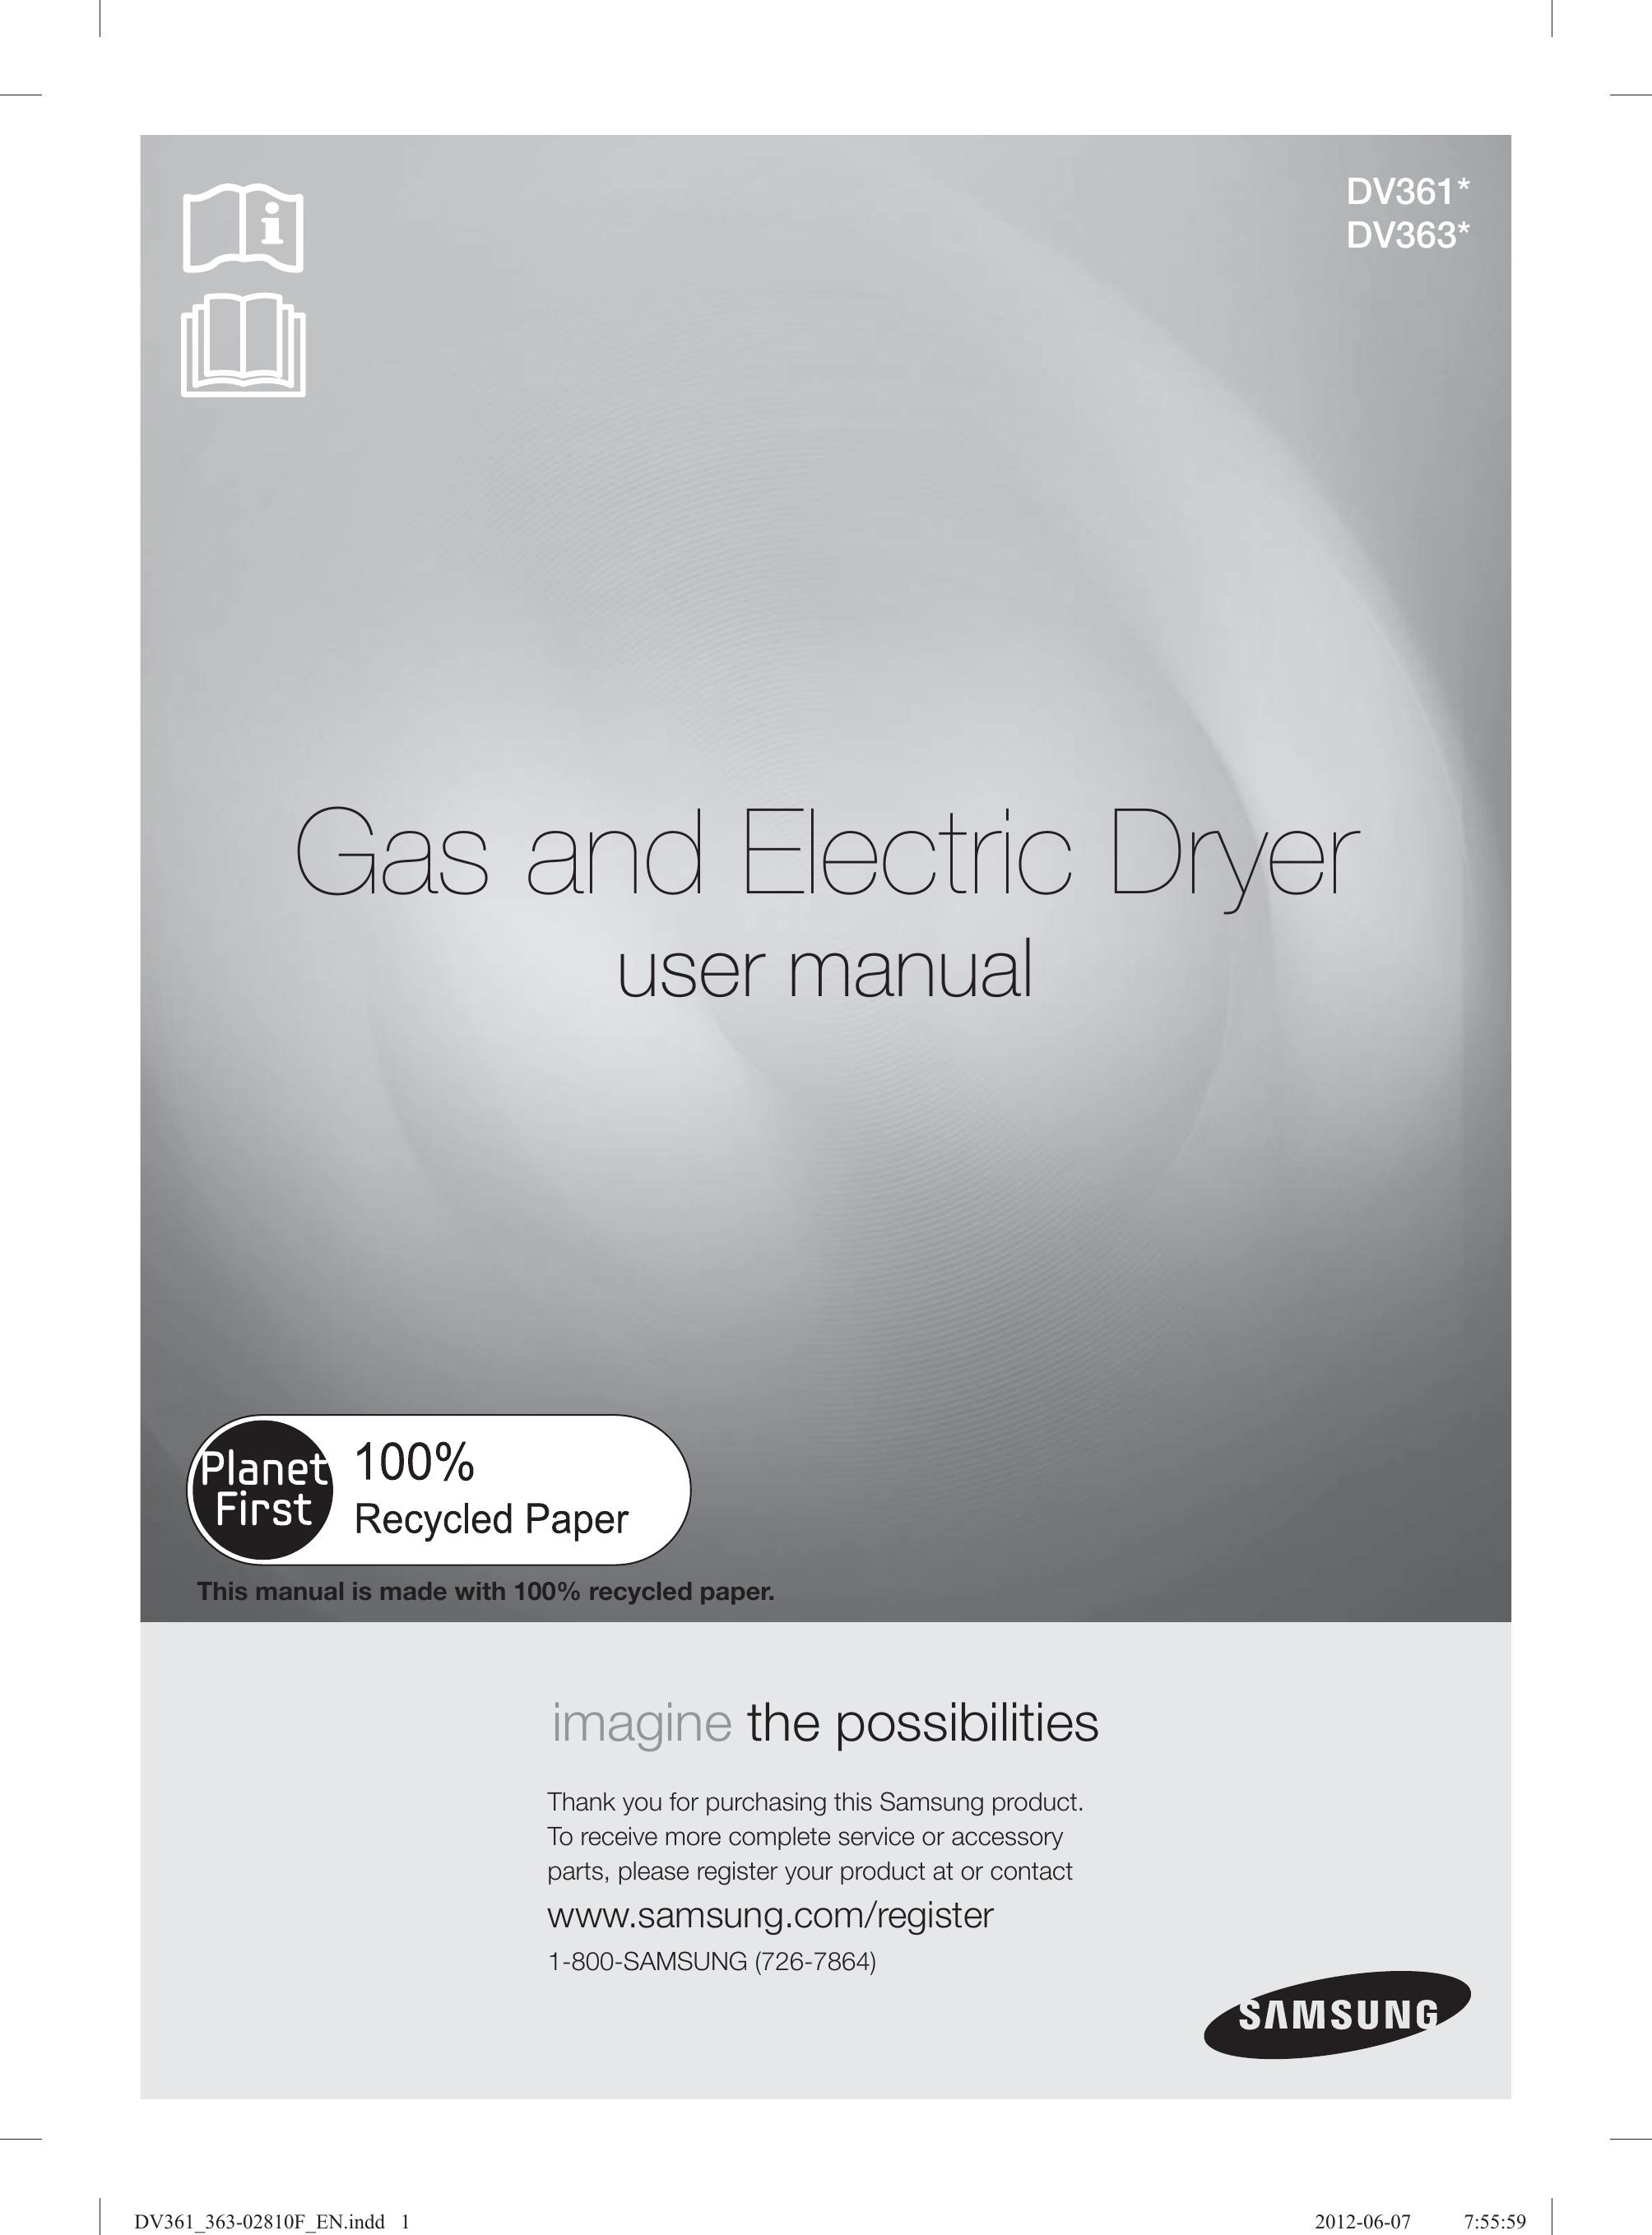 Samsung DV361GWBEWR Clothes Dryer User Manual